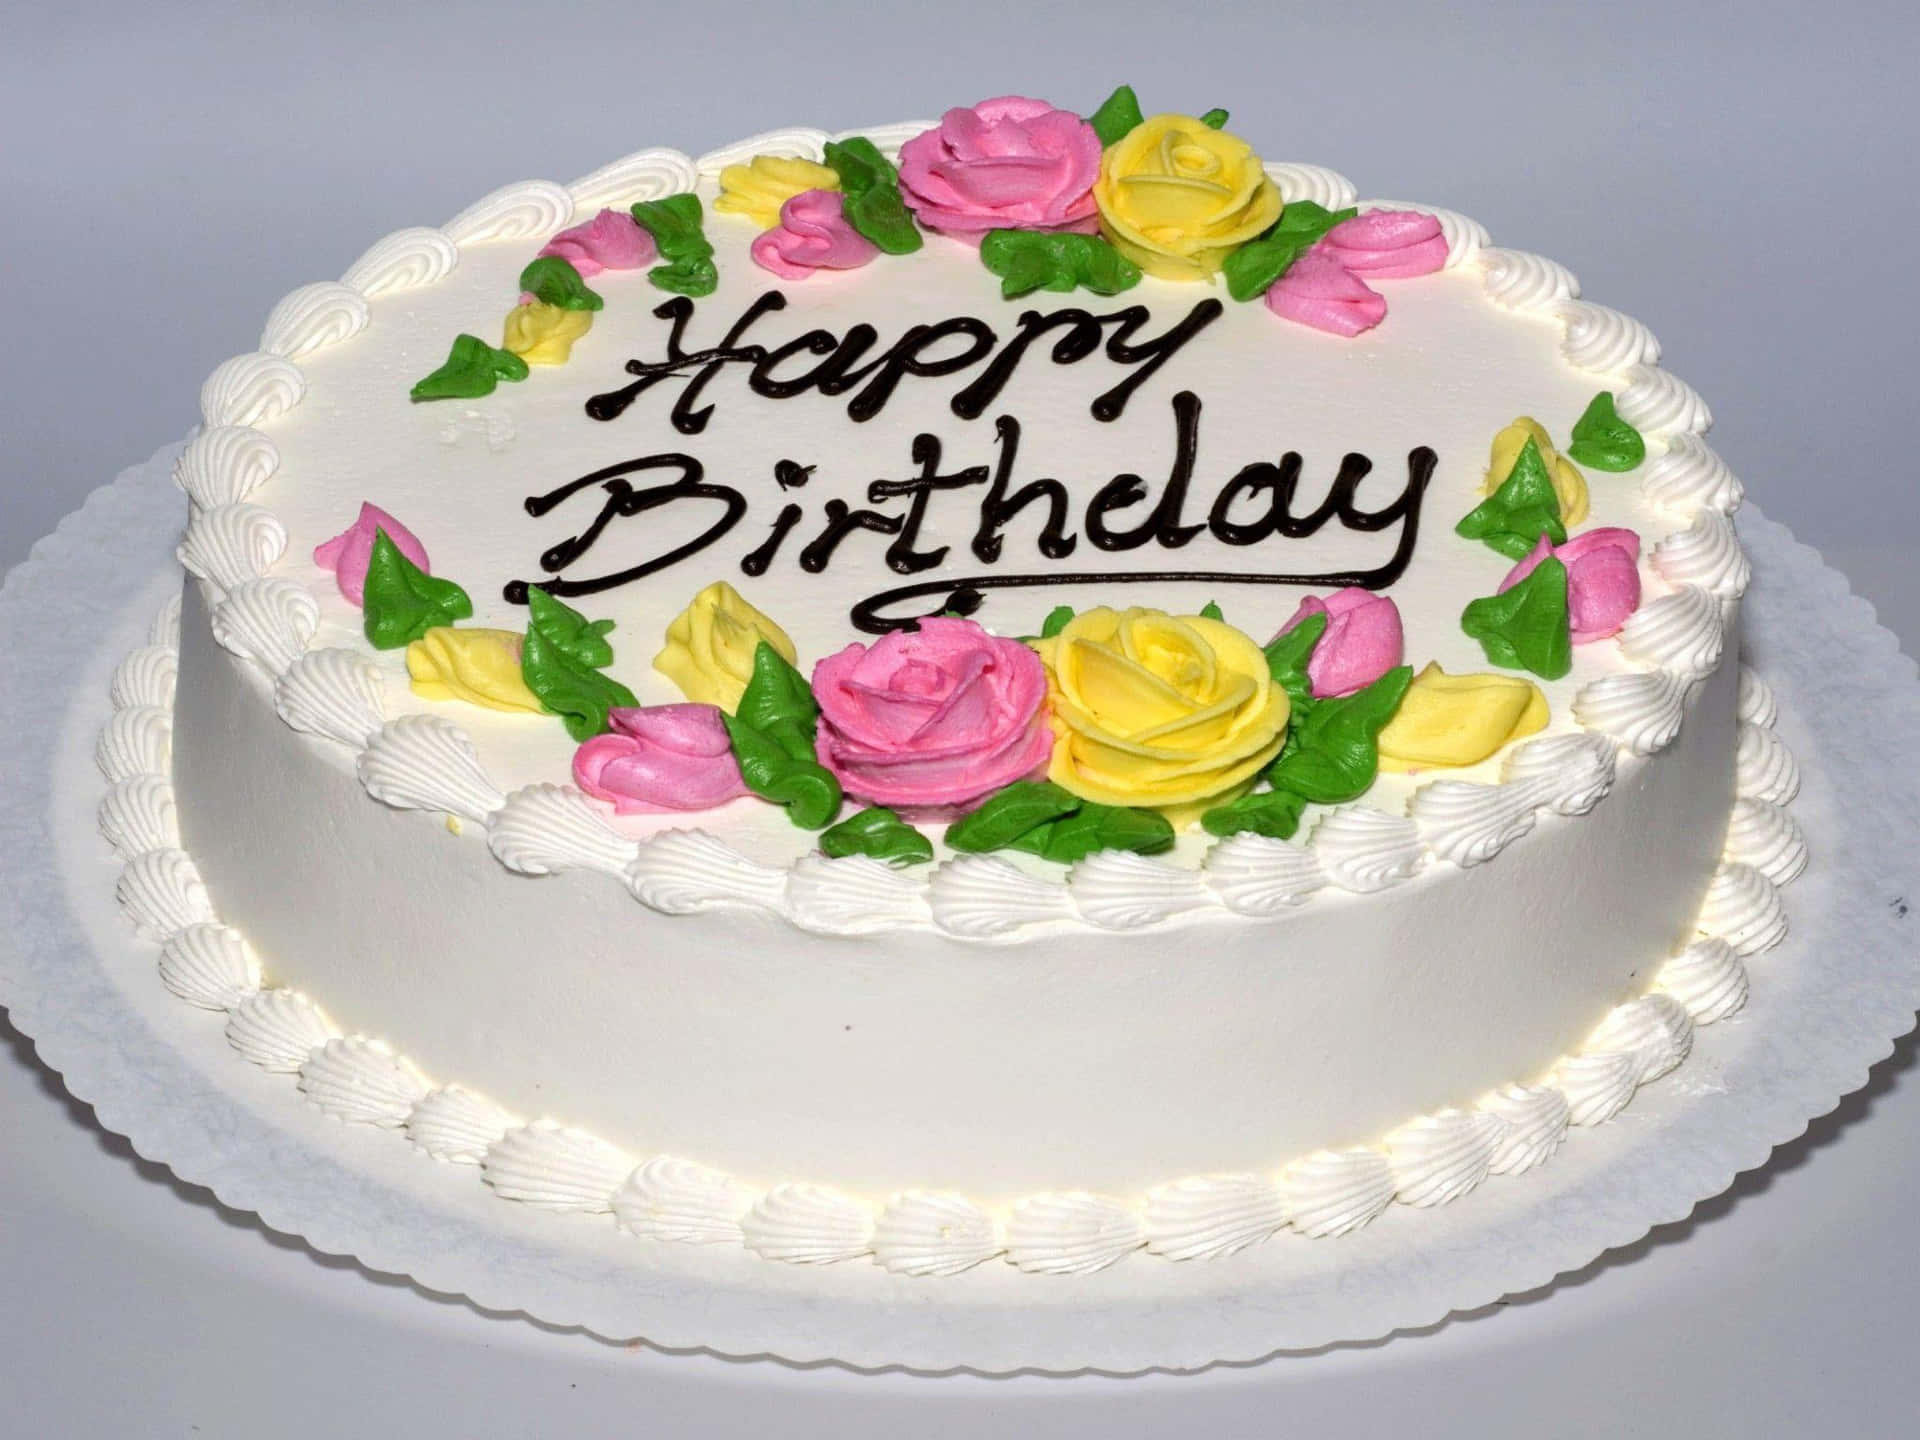 En hvid kage med blomster på den er dekoreret med glade fødselsdagsmærkater